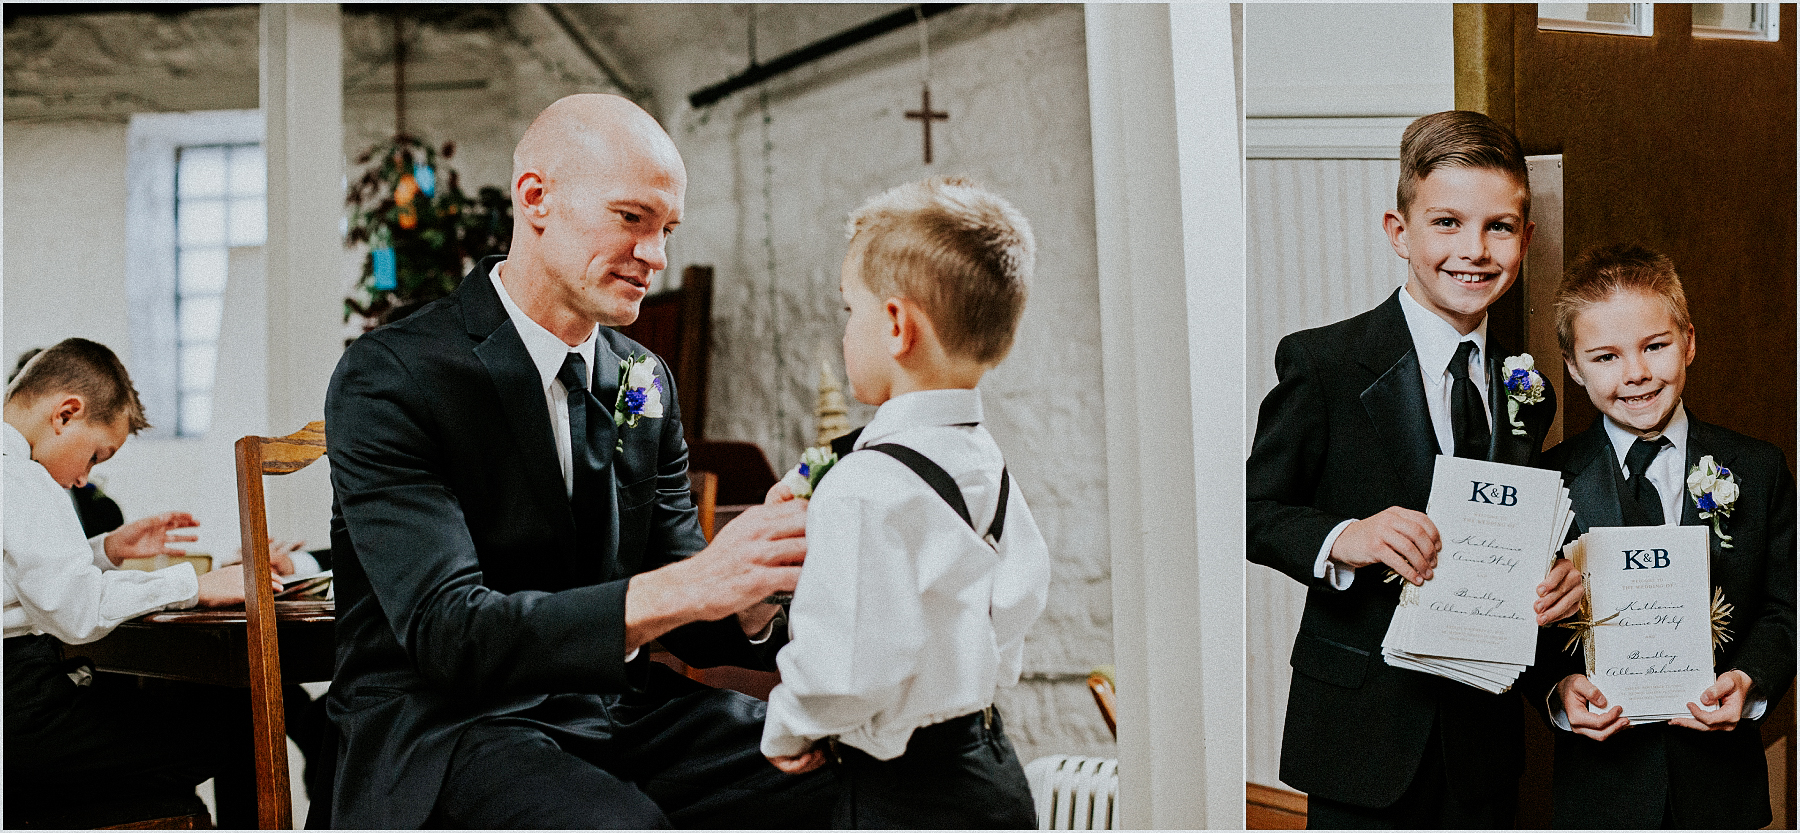 Grain Exchange Wedding - Milwaukee Wedding Photographer // Amarie Photography